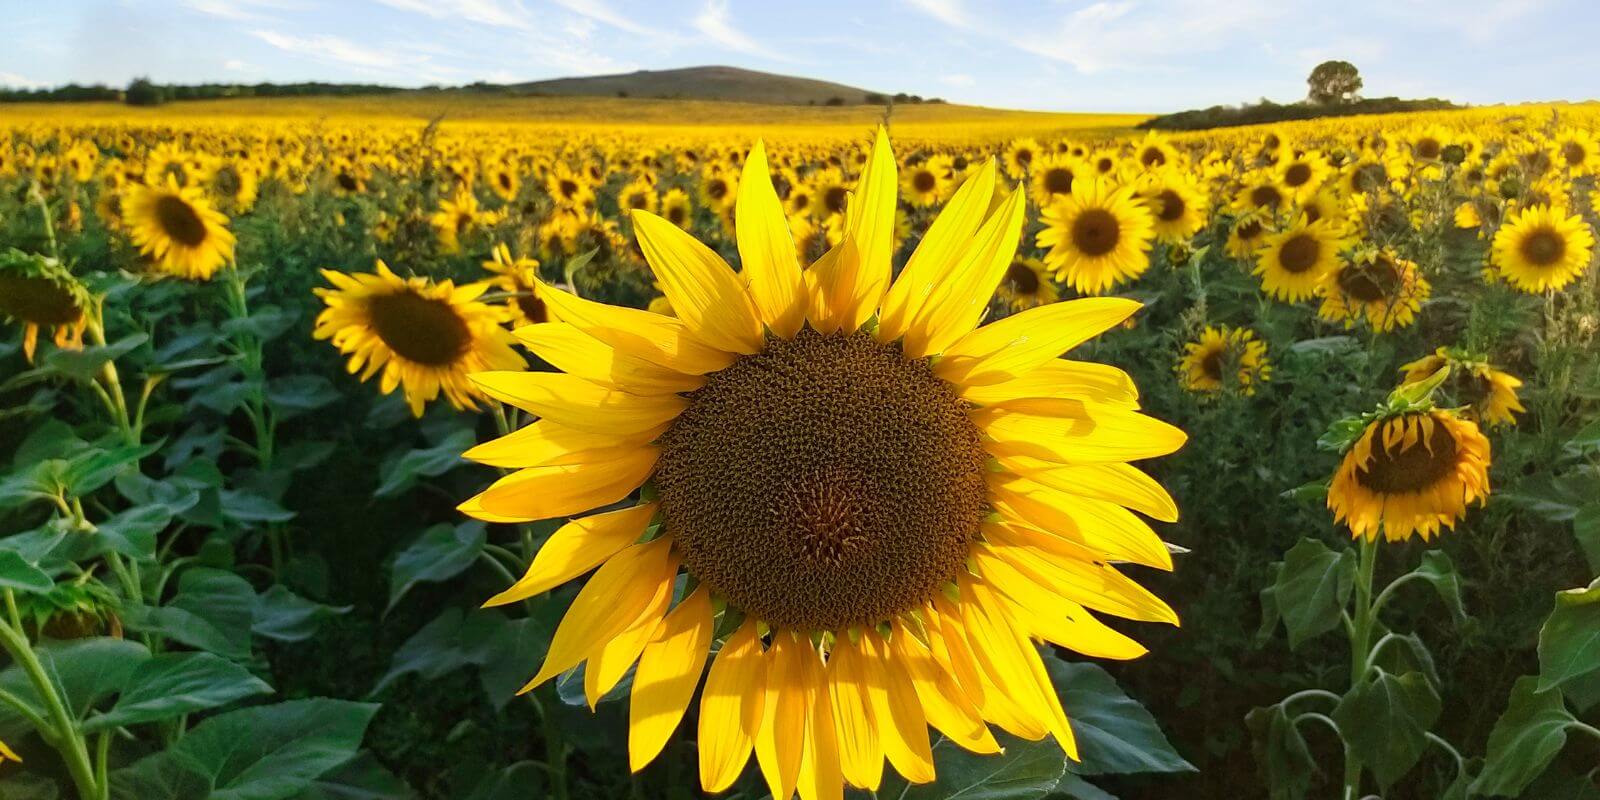 An abundant field of Sunflowers